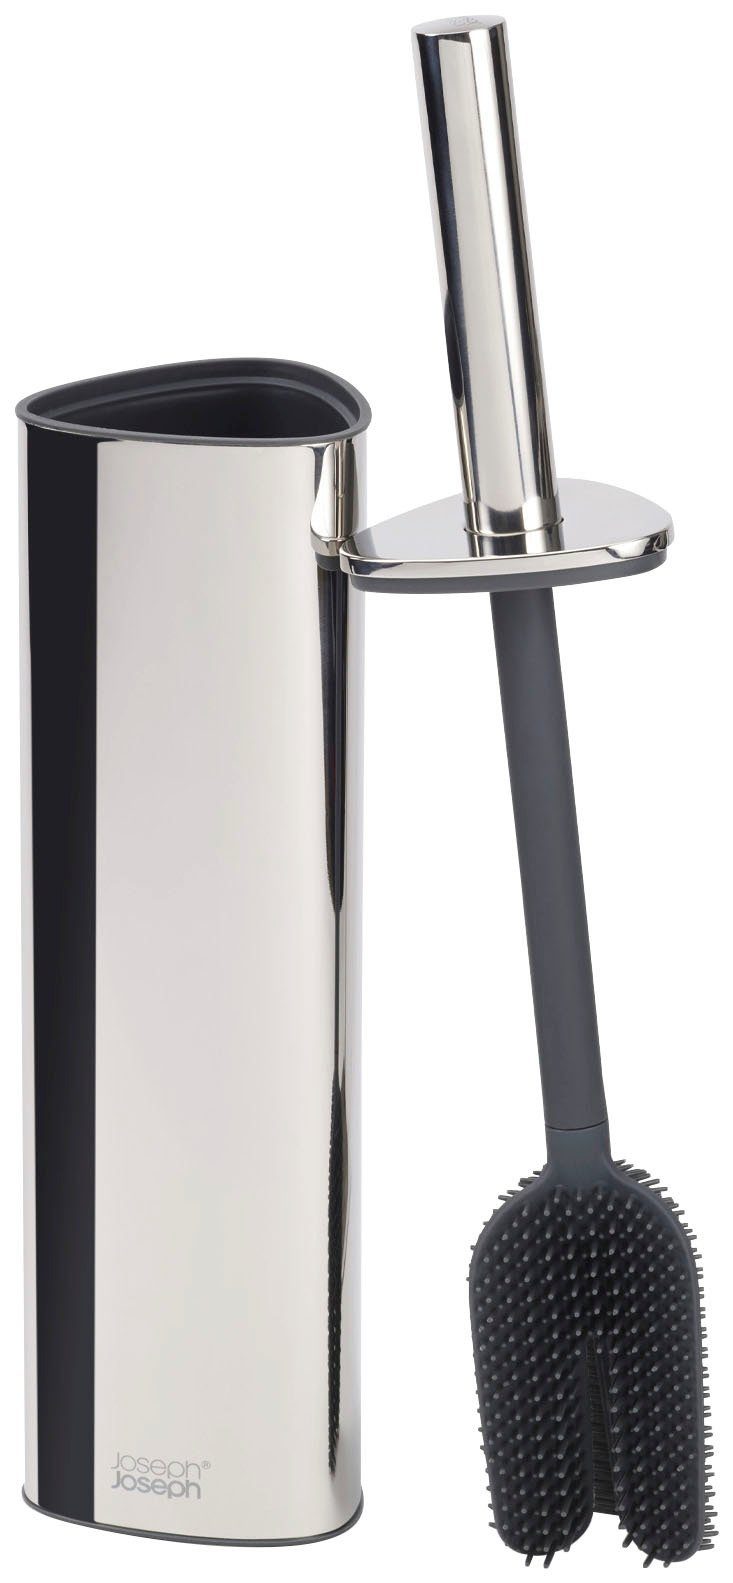 Joseph Joseph WC-Reinigungsbürste Flex 360 mit Edelstahloberfläche Luxe Advanced